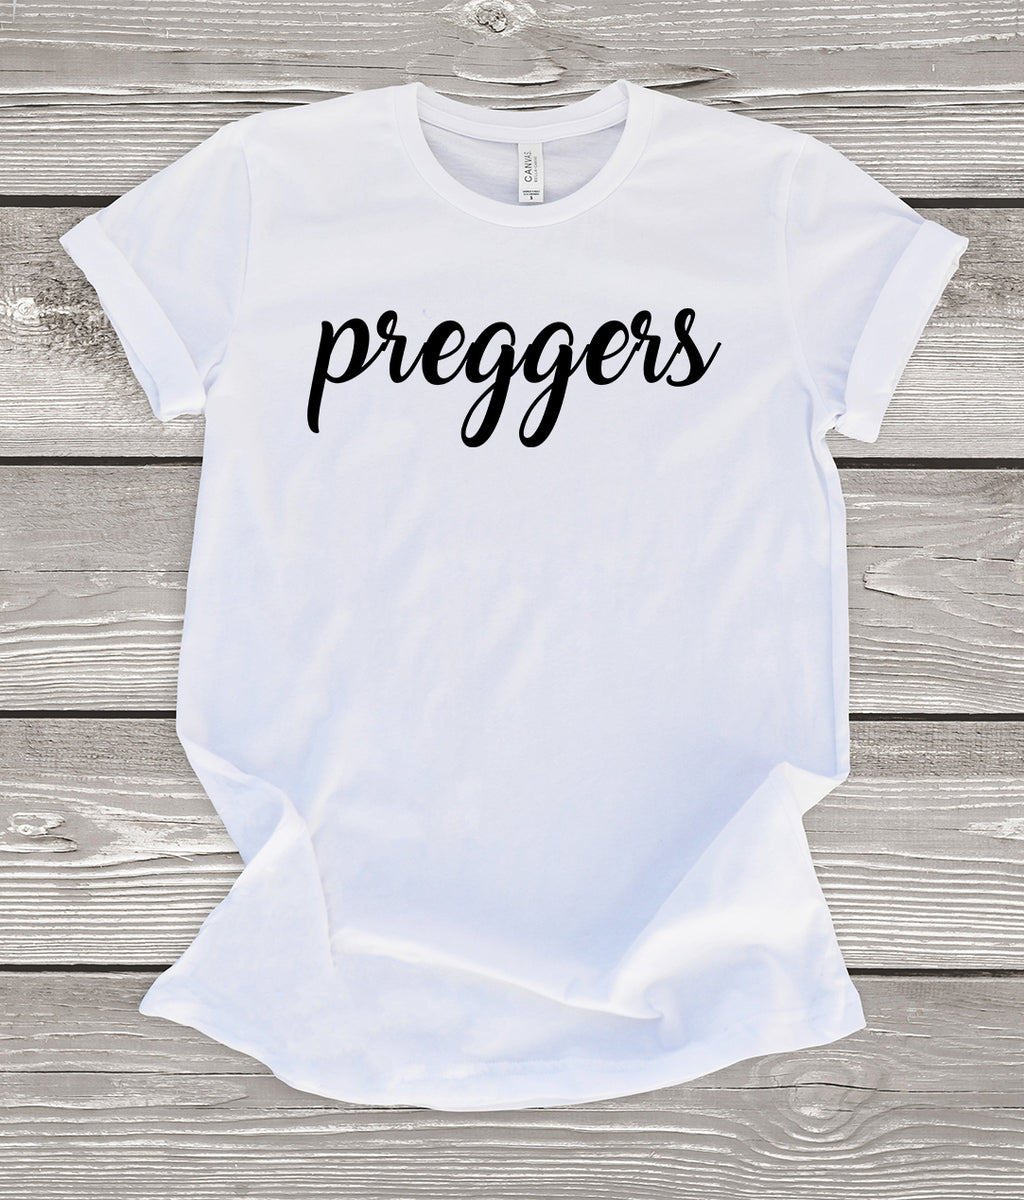 Preggers T-Shirt